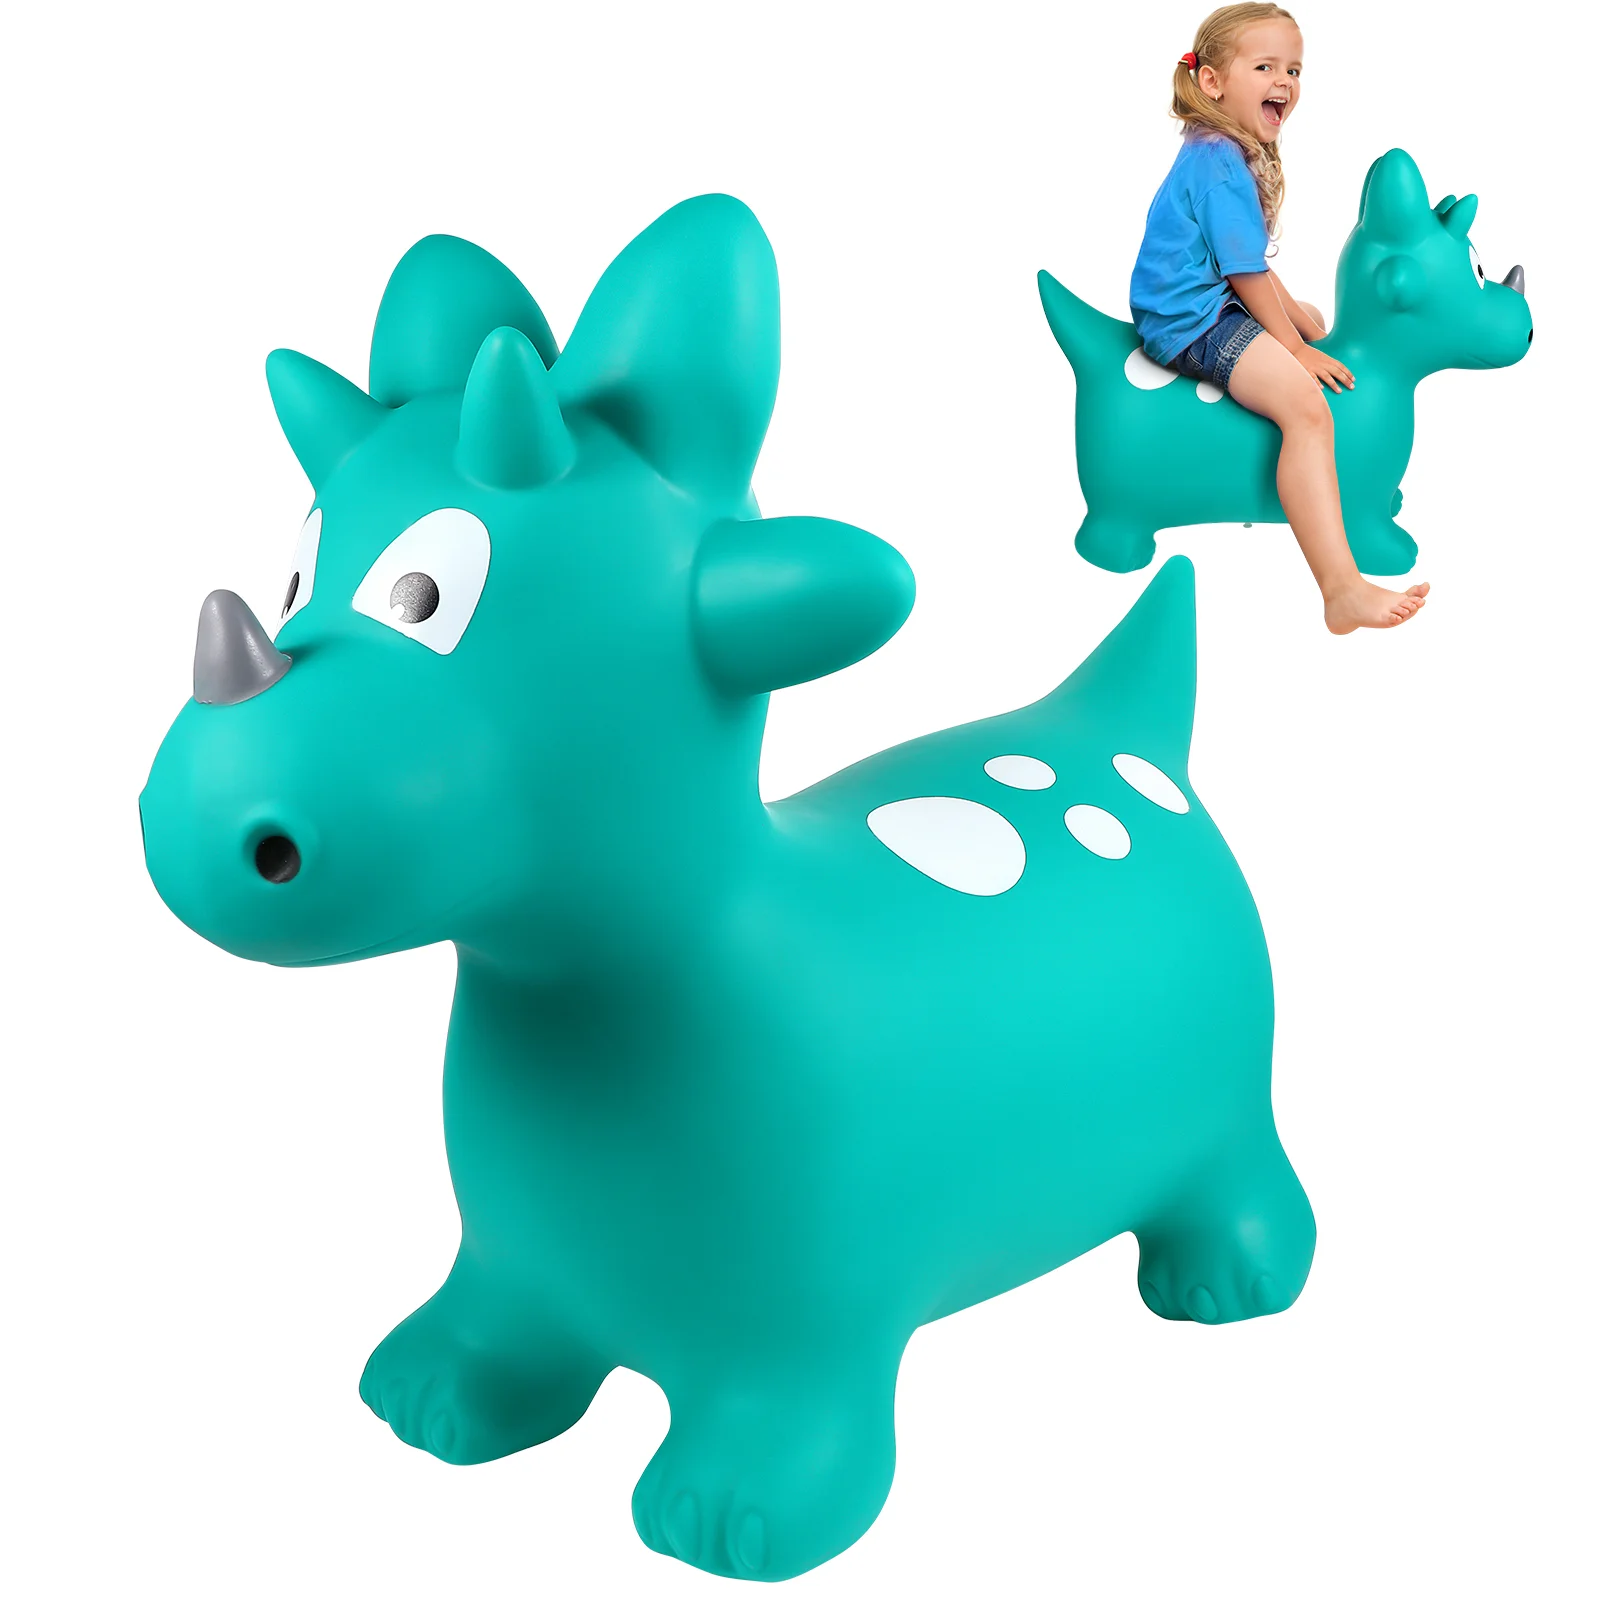 

Детский прыгающий динозавр, прыгающая игрушка, прыгающий динозавр, игрушка из ПВХ, надувная лошадь, подпрыгивающая игрушка динозавра для фитнеса